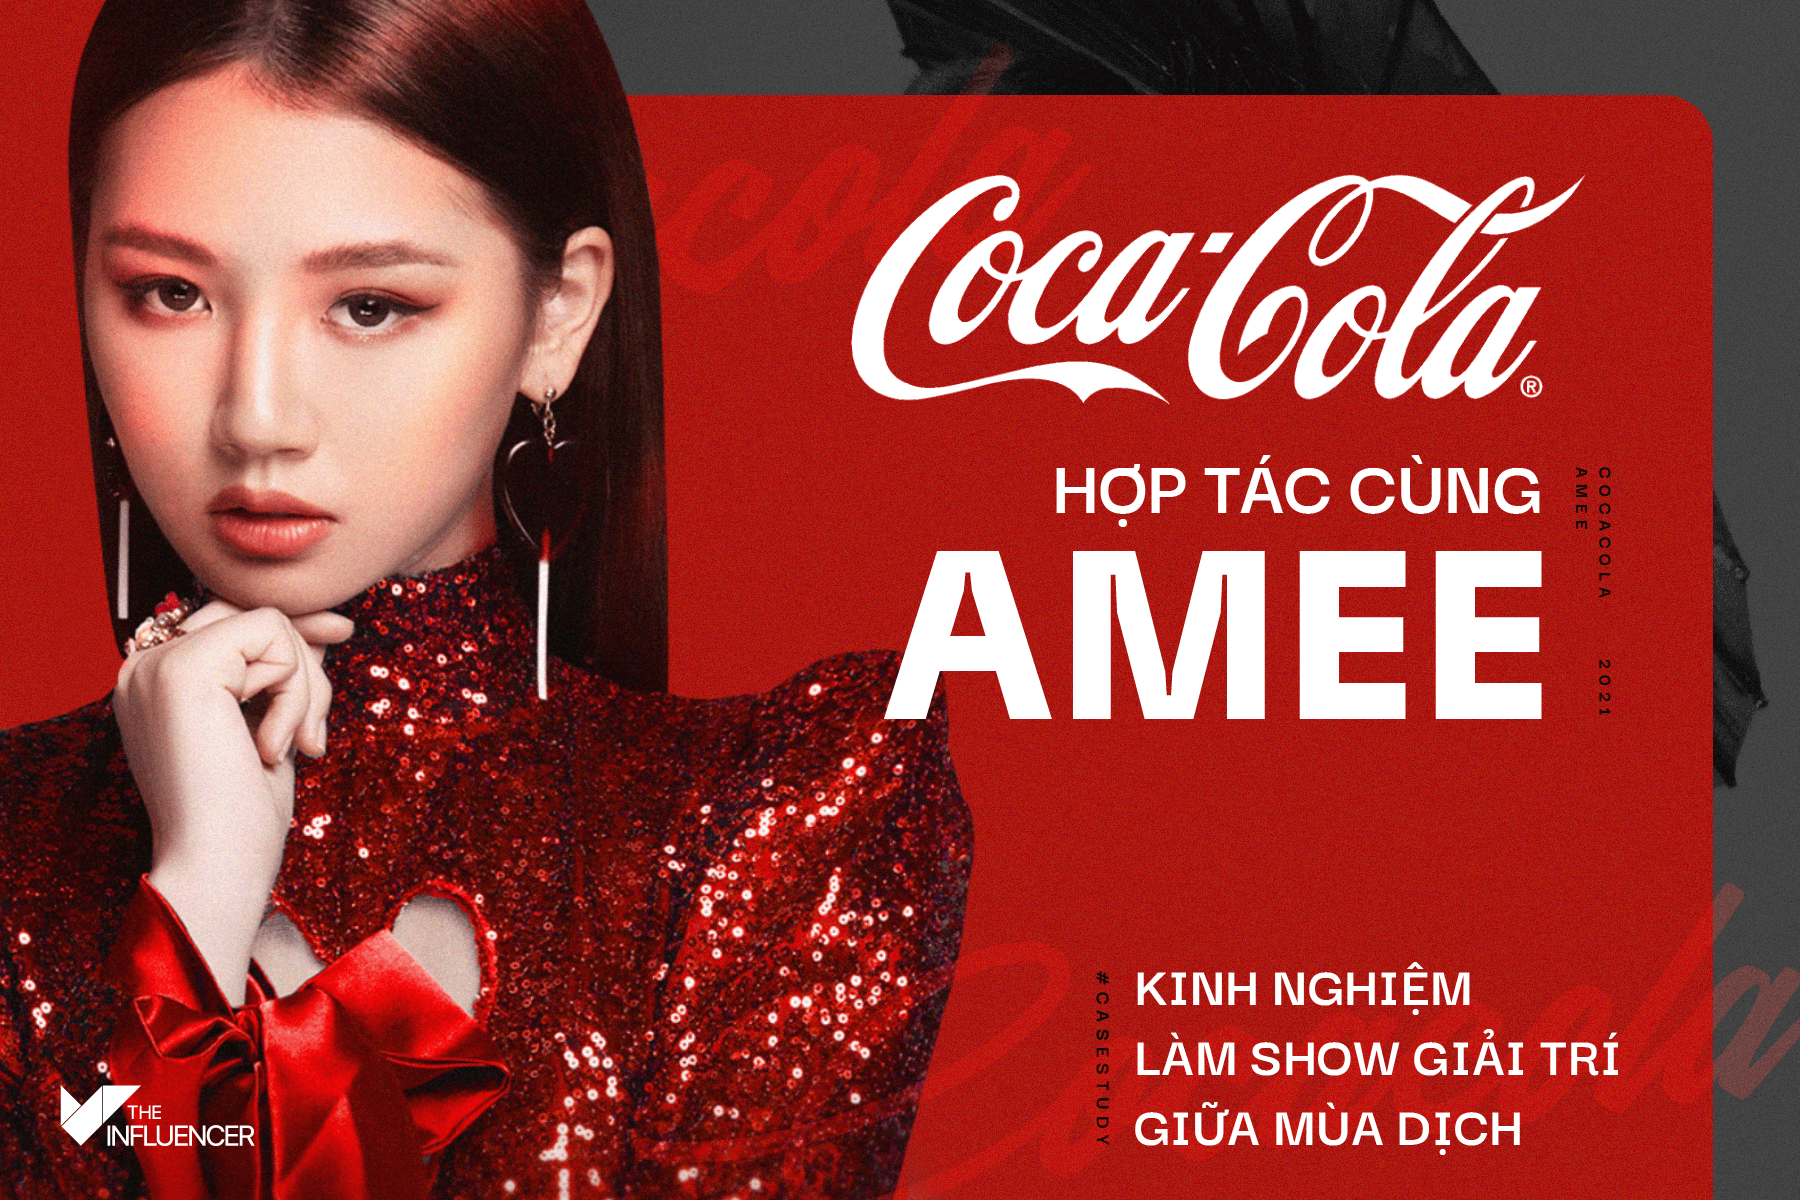 #Casestudy: Coca-Cola hợp tác cùng Amee - Câu chuyện làm show giải trí giữa mùa dịch